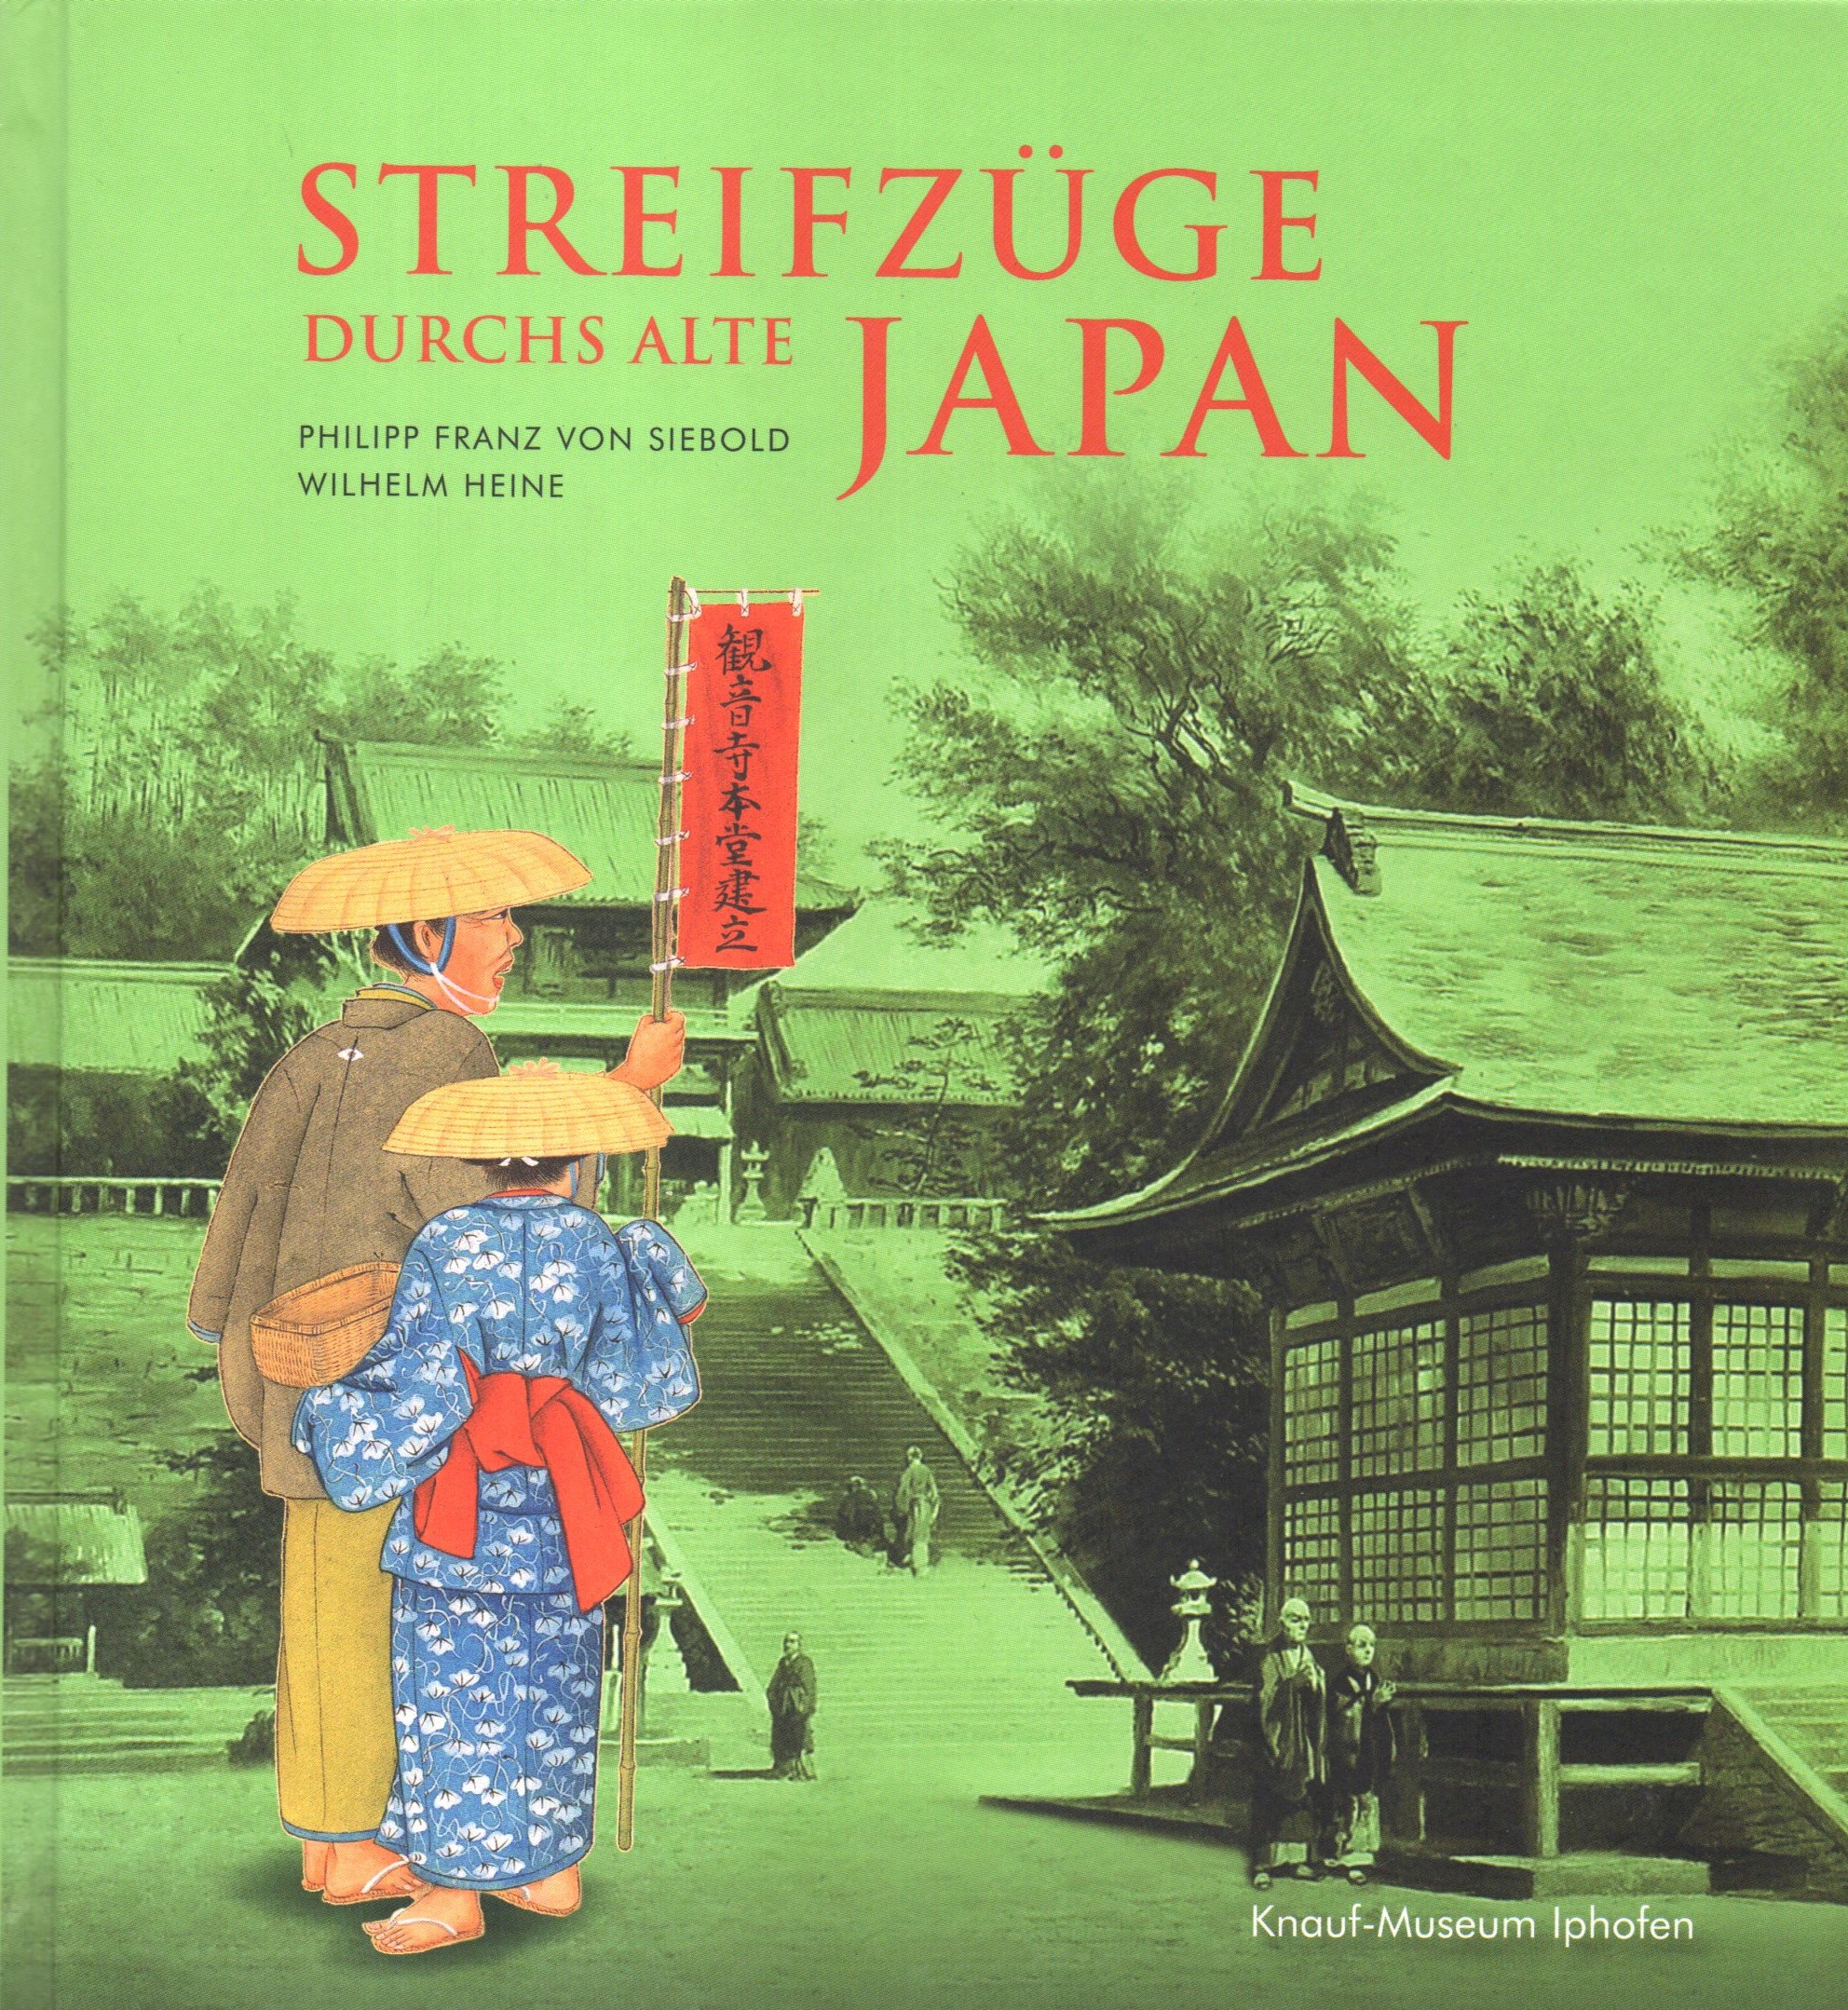 Streifzüge durchs Alte Japan - Mergenthaler, Markus, Philipp Franz von Siebold und Wilhelm Heine